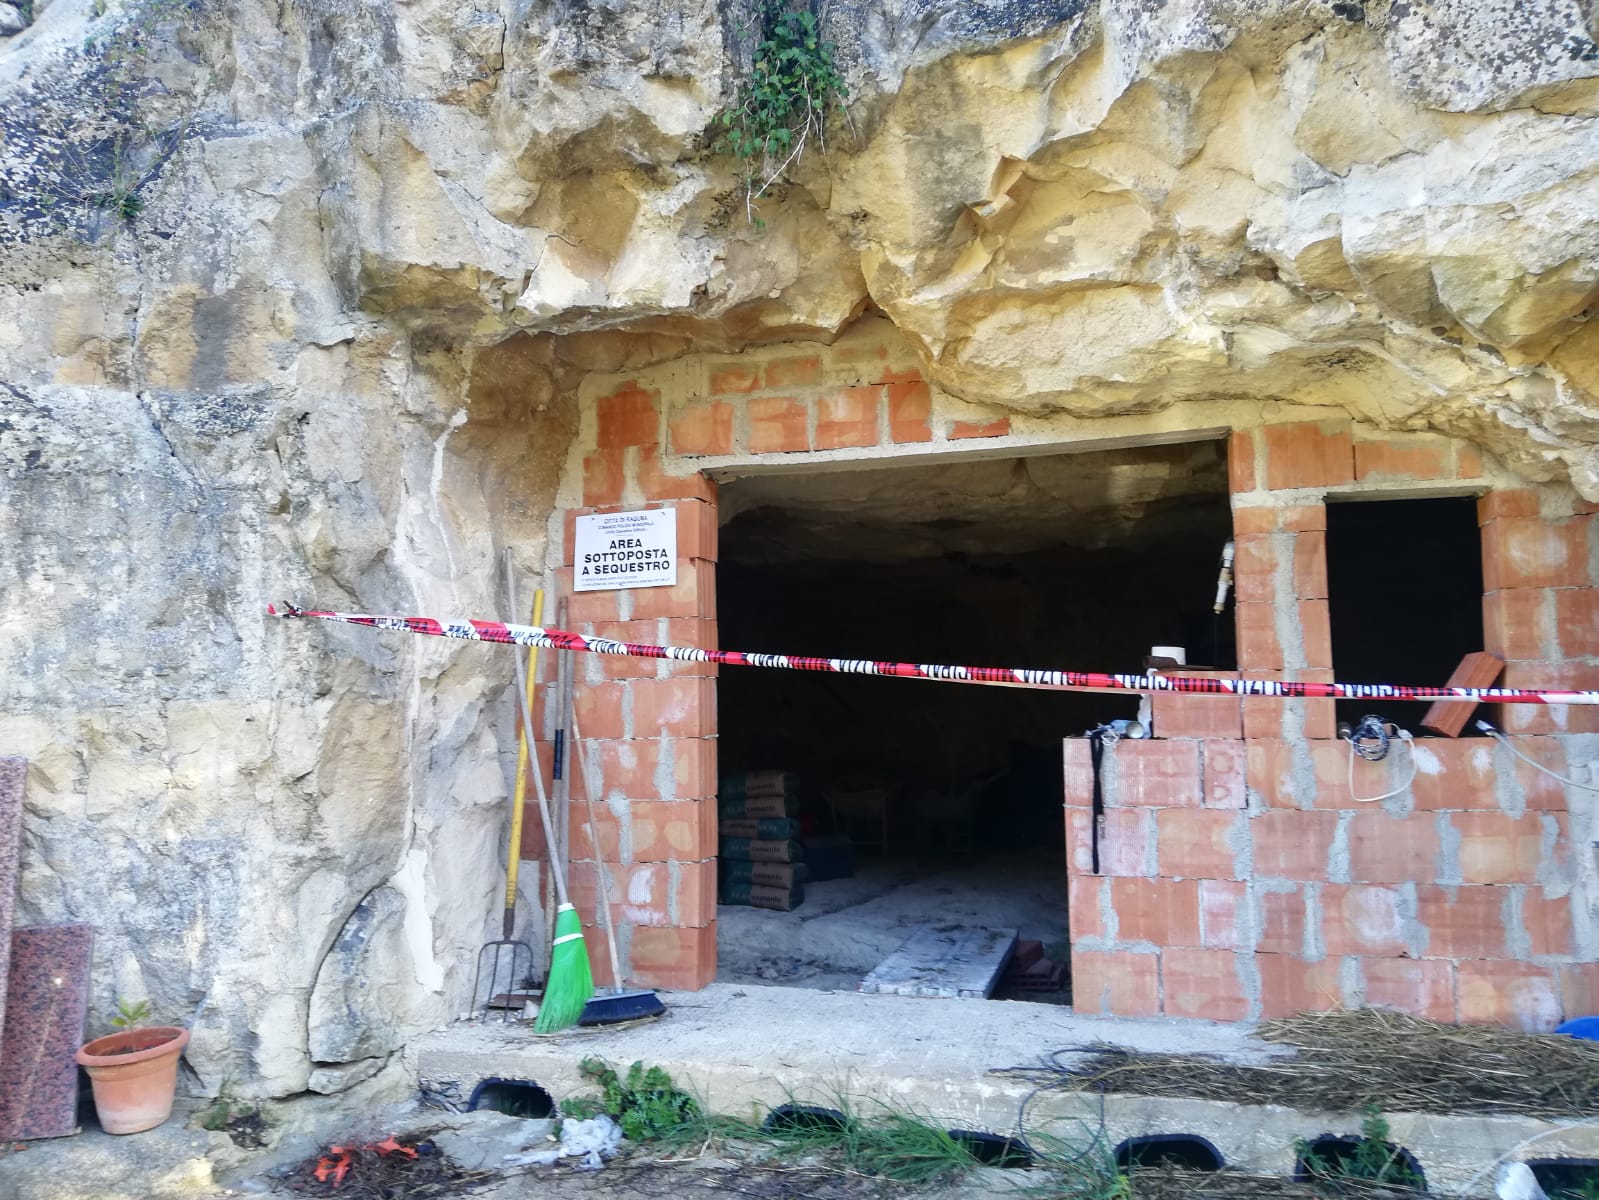 Sequestrato un cantiere in una grotta naturale rupestre, scatta una denuncia – FOTO